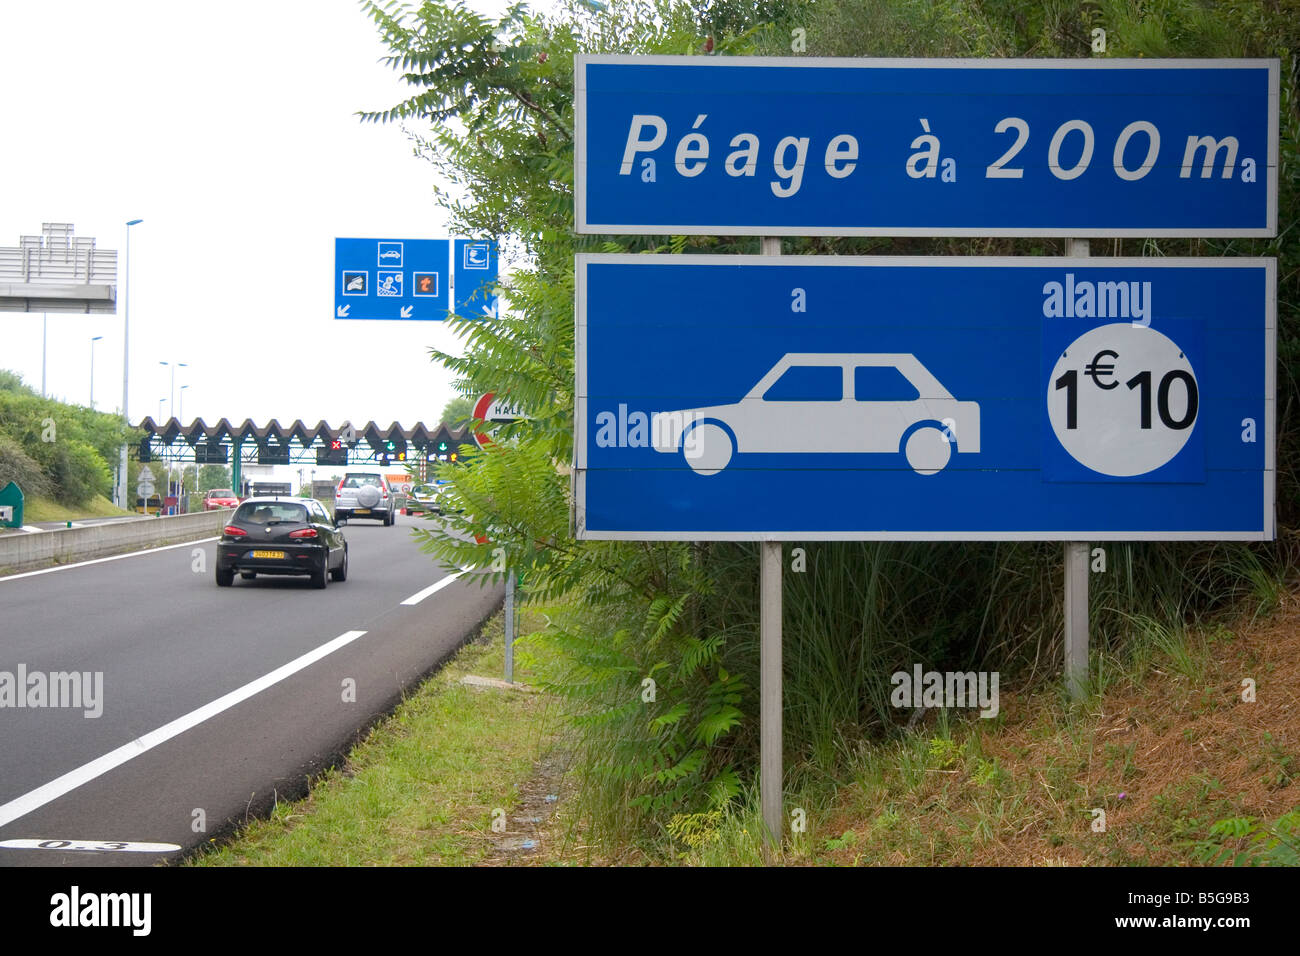 Französische Peage oder gebührenpflichtige Straße in der Nähe der Stadt von Bayonne Pyrenäen Atlantiques französischen baskischen Südwest-Frankreich Stockfoto